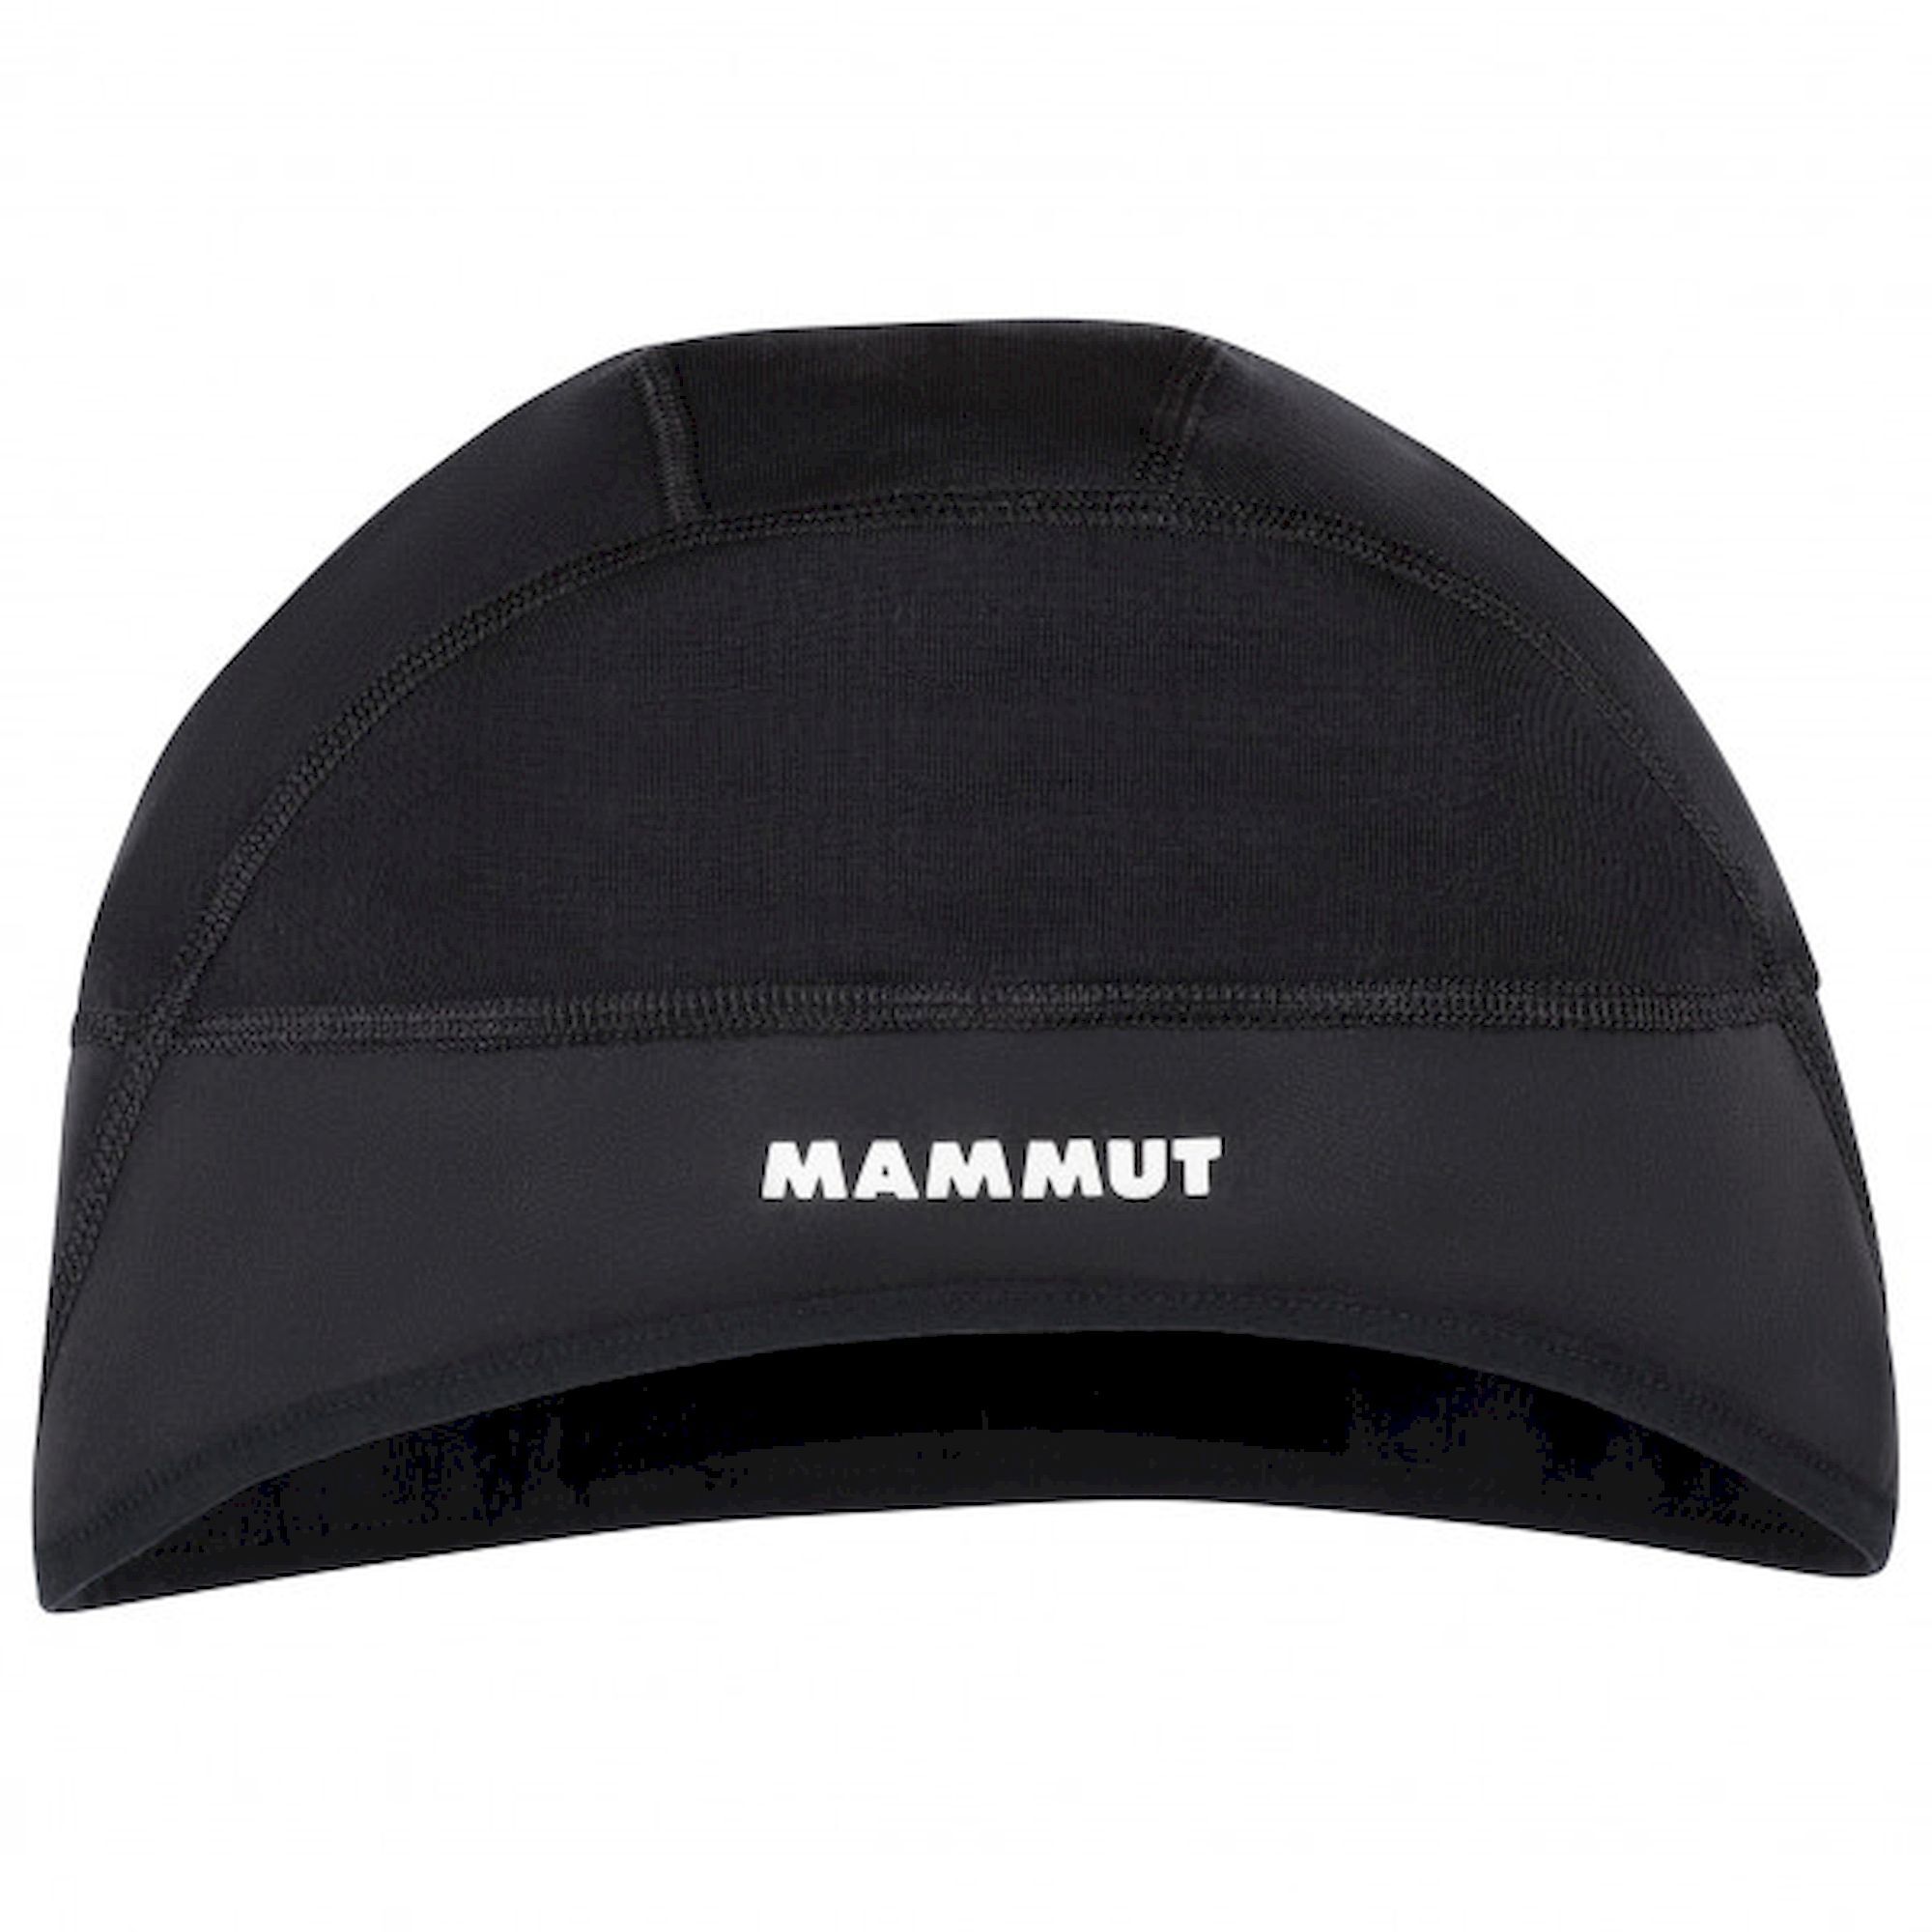 Mammut WS Helm Cap - Muts - Heren